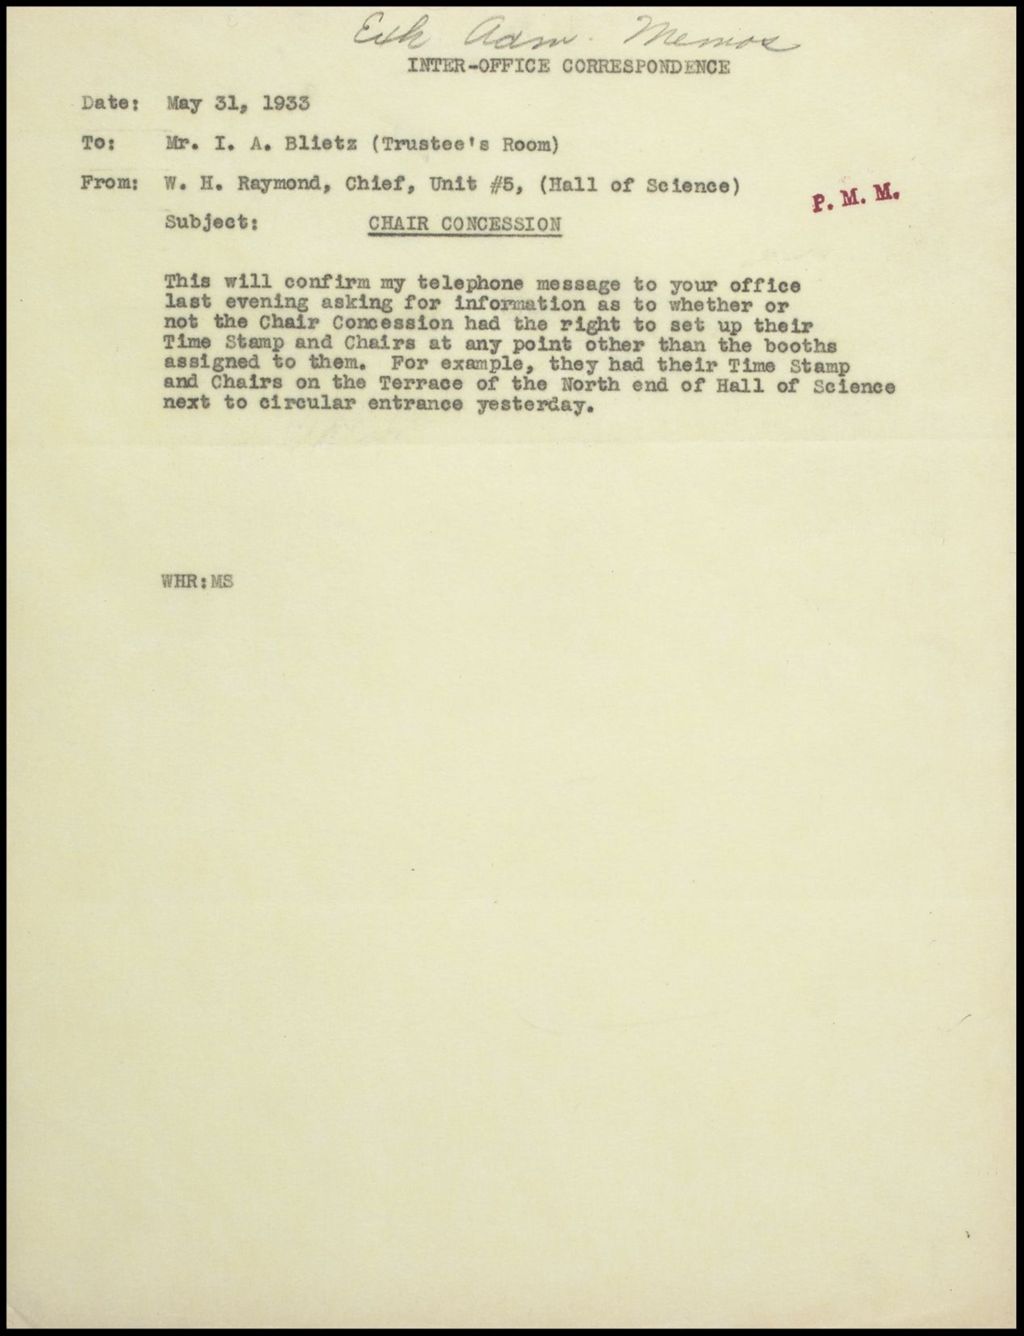 Miniature of Exhibits, Memos, January - June 1933 (Folder 11-3)